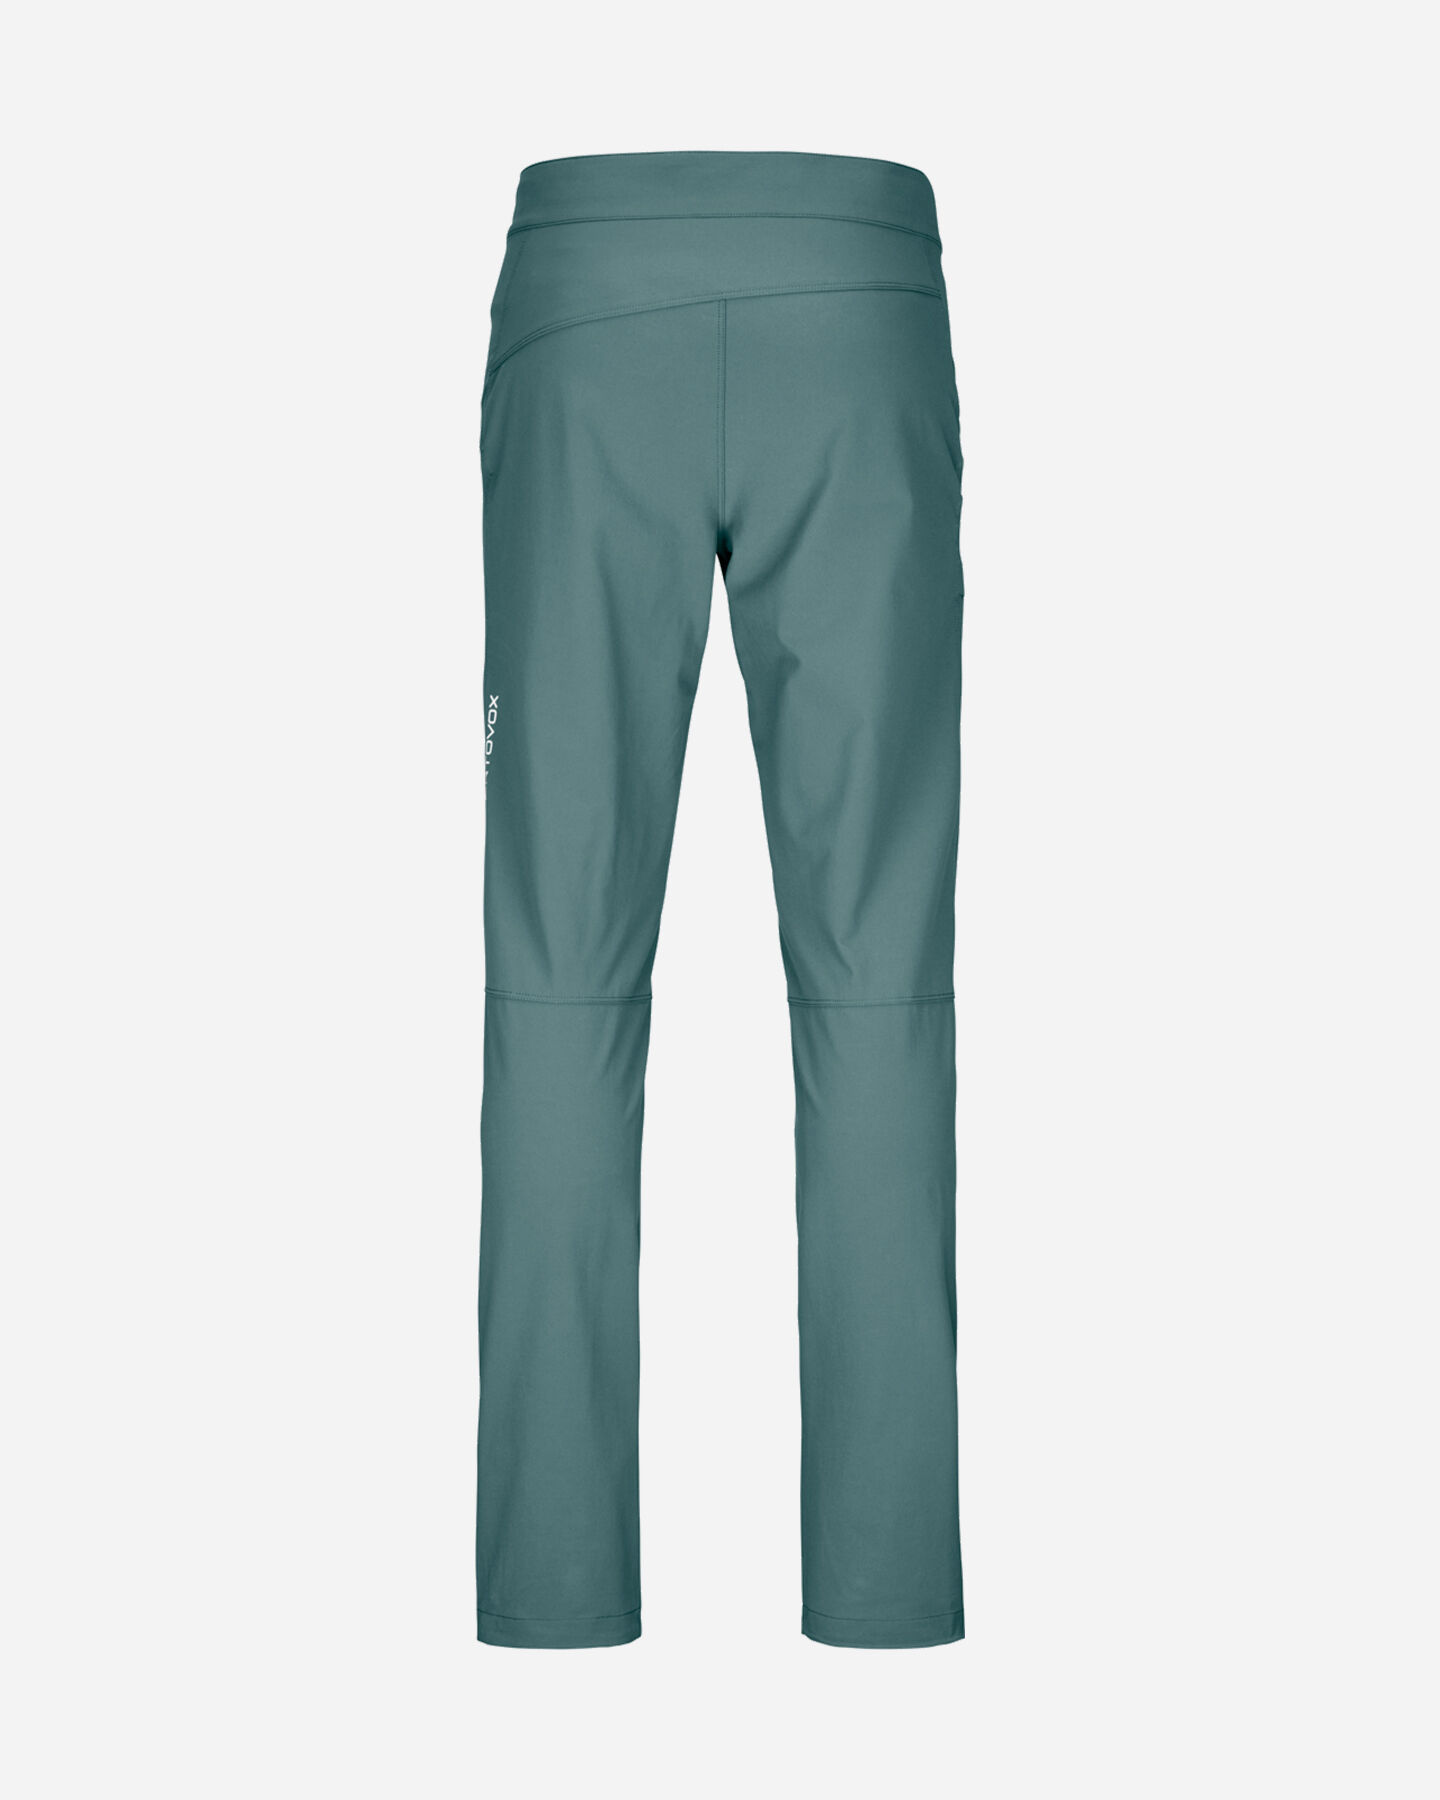  Pantalone outdoor ORTOVOX BRENTA M S4132990|1|M scatto 1